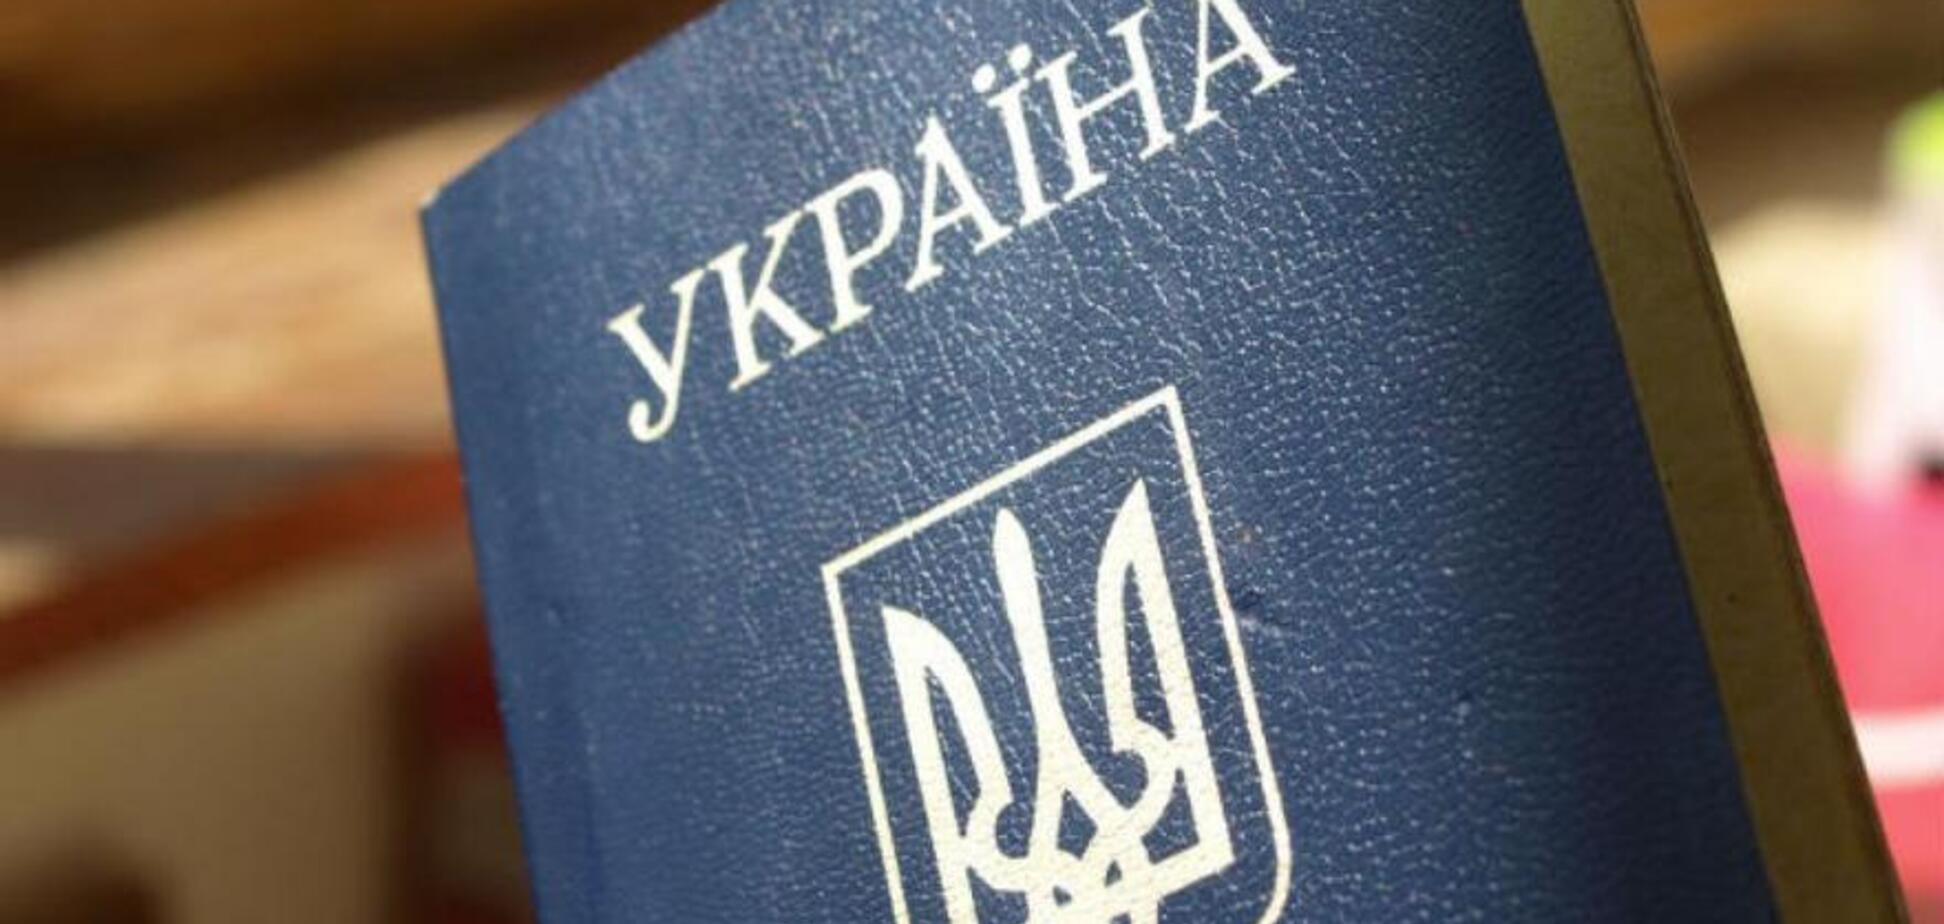 'Існує небезпека': посольство України дало рекомендації пщодо поїздок у Росію через Білорусь